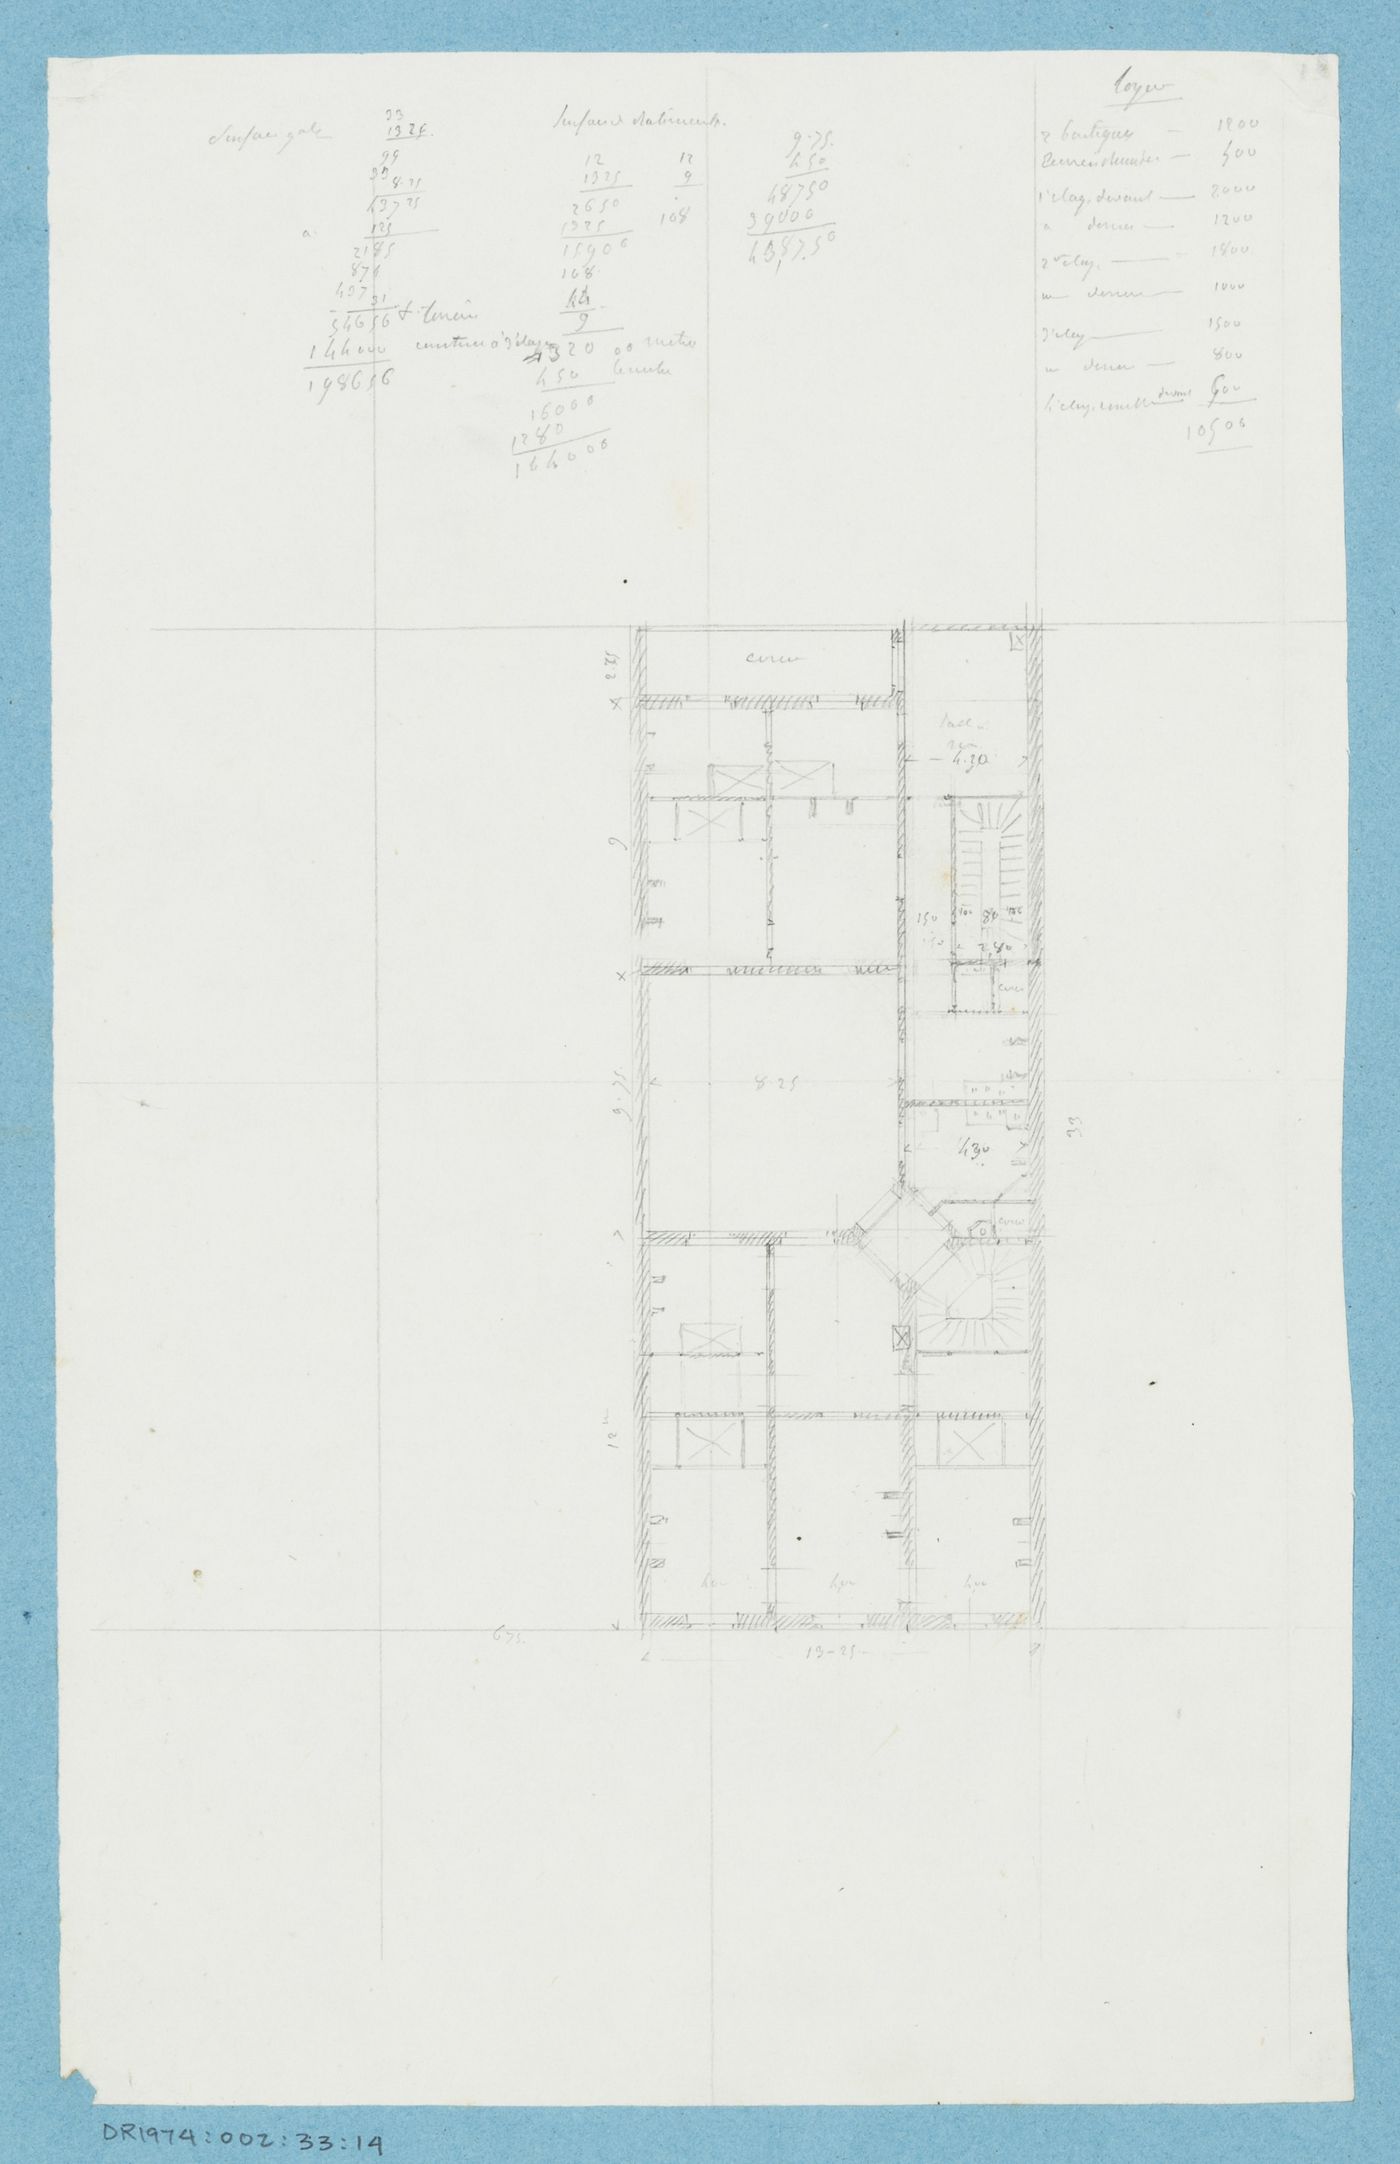 Project for a hôtel for M. Busche [?]; Plan for a five-storey [?] hôtel